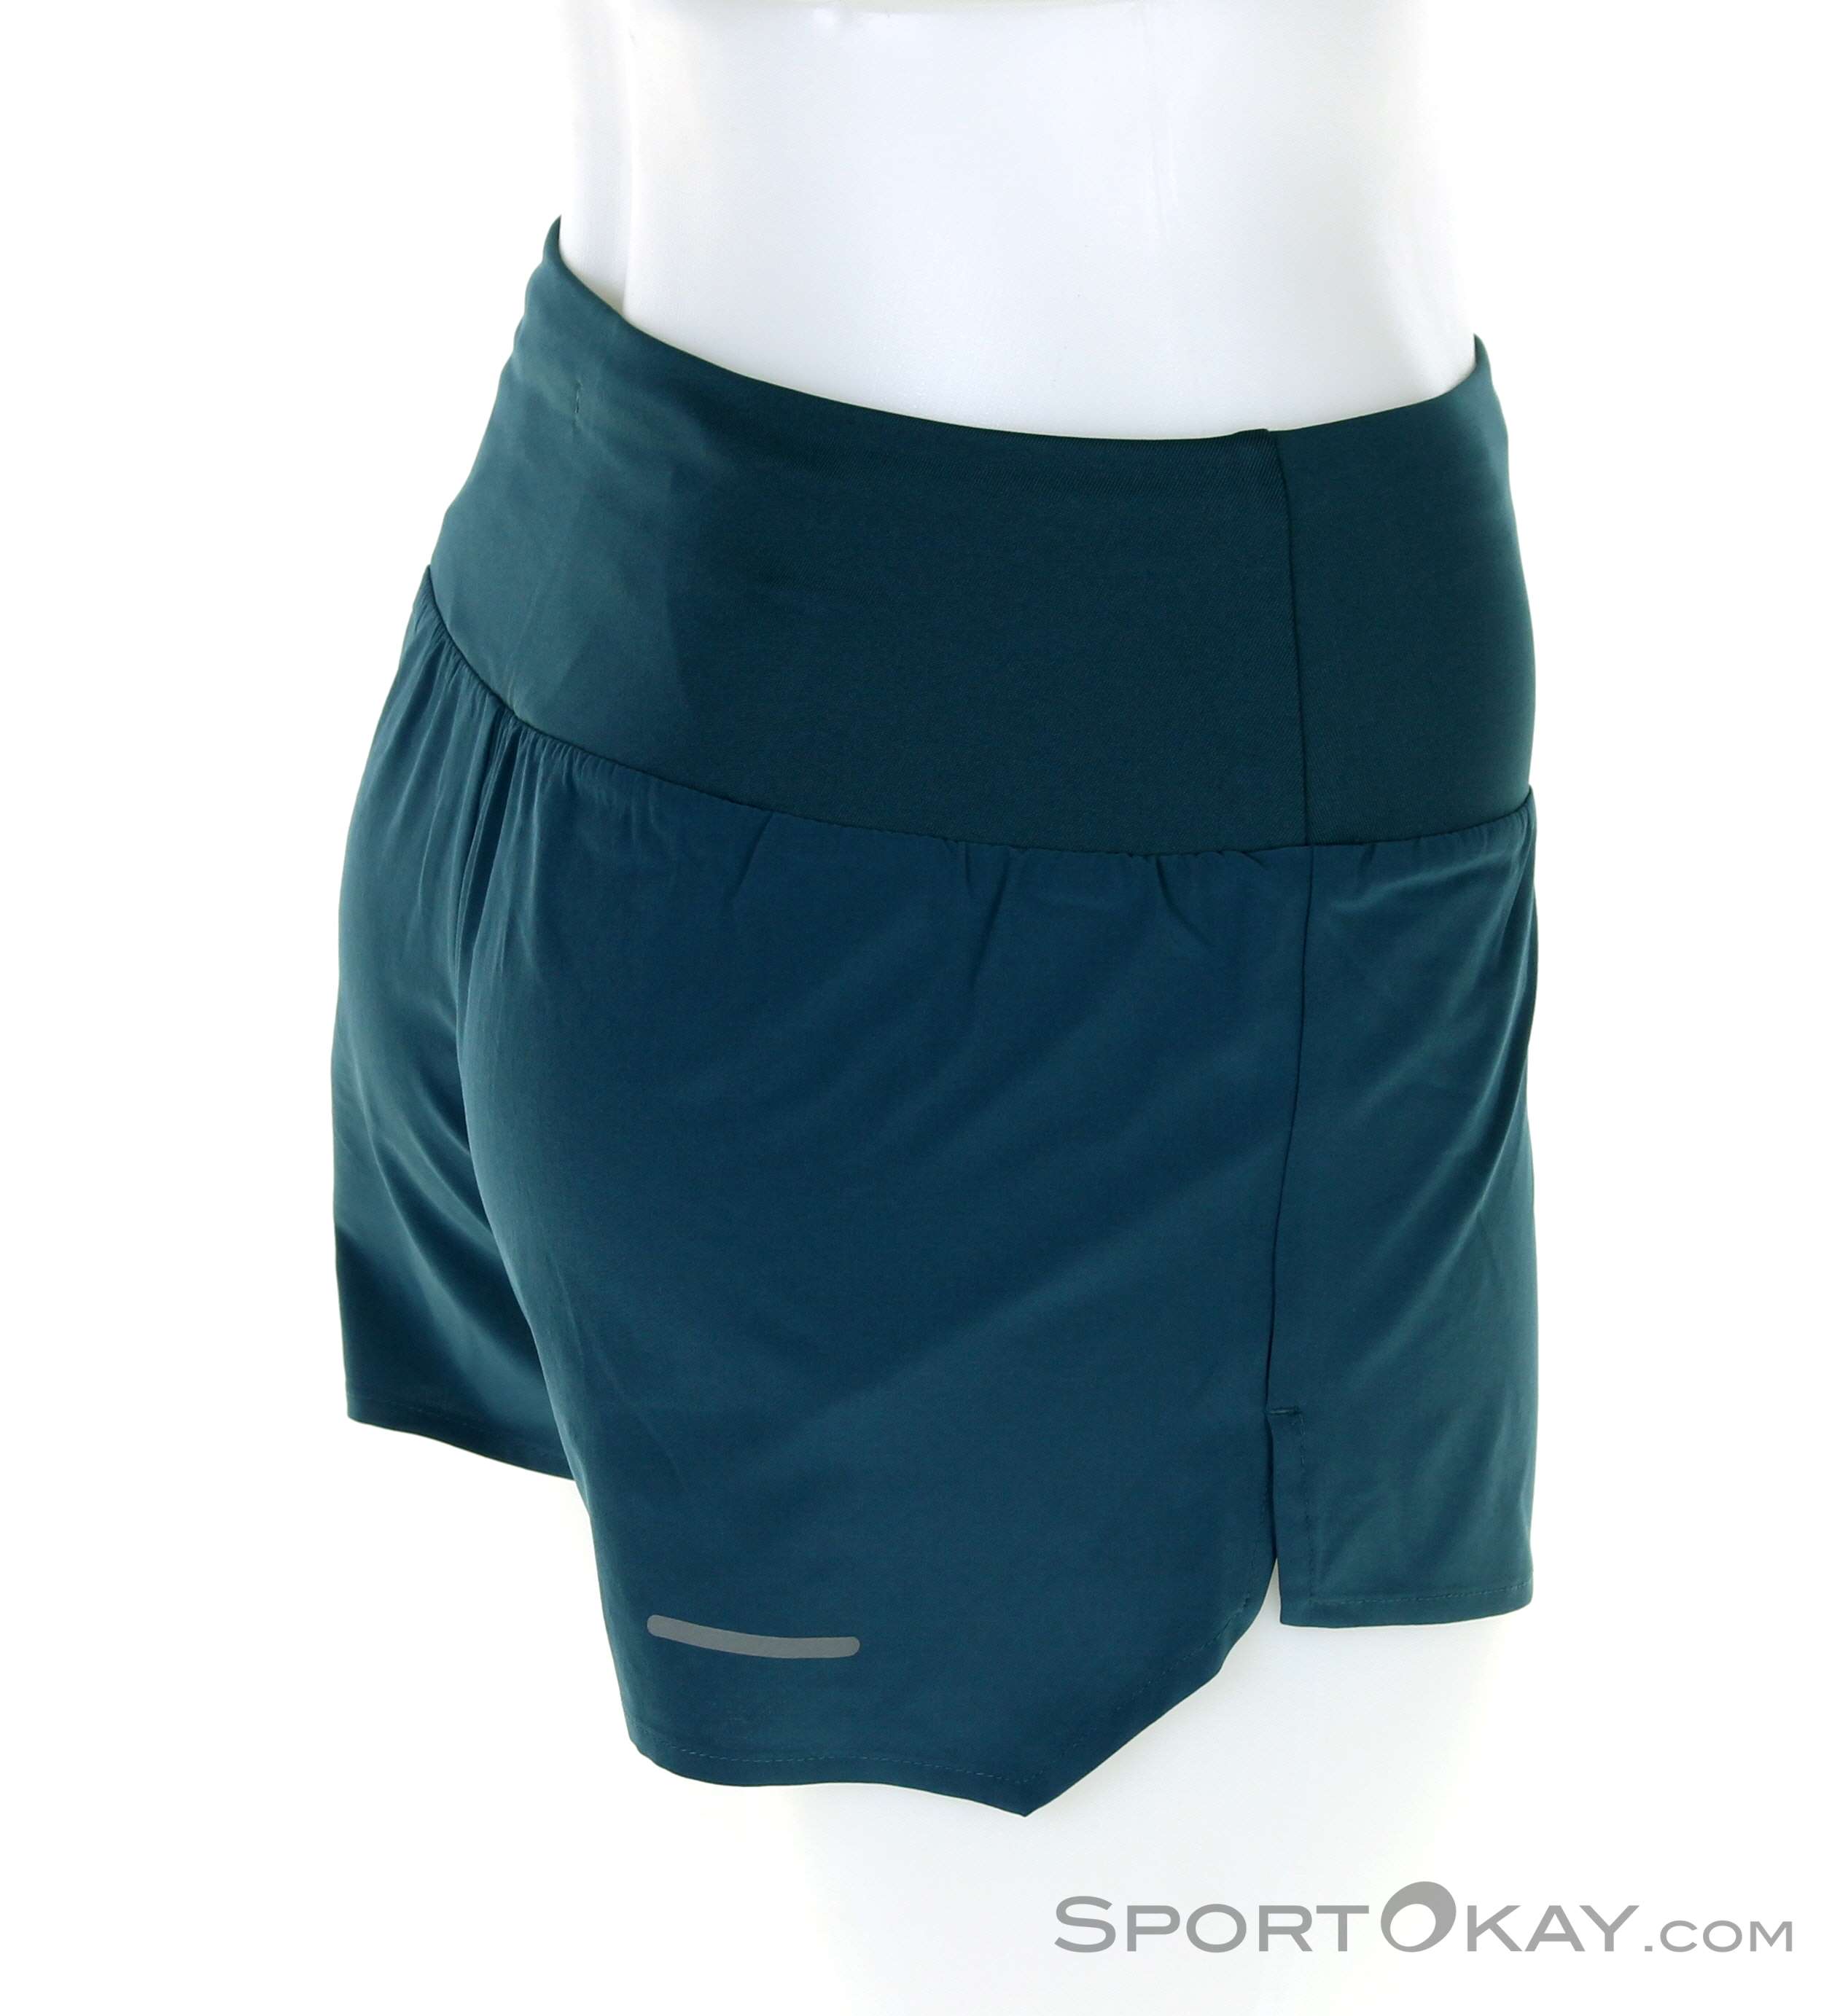 Asics Asics Road 3,5 in Running - Running Women Pants - All Running Shorts - - Short Clothing